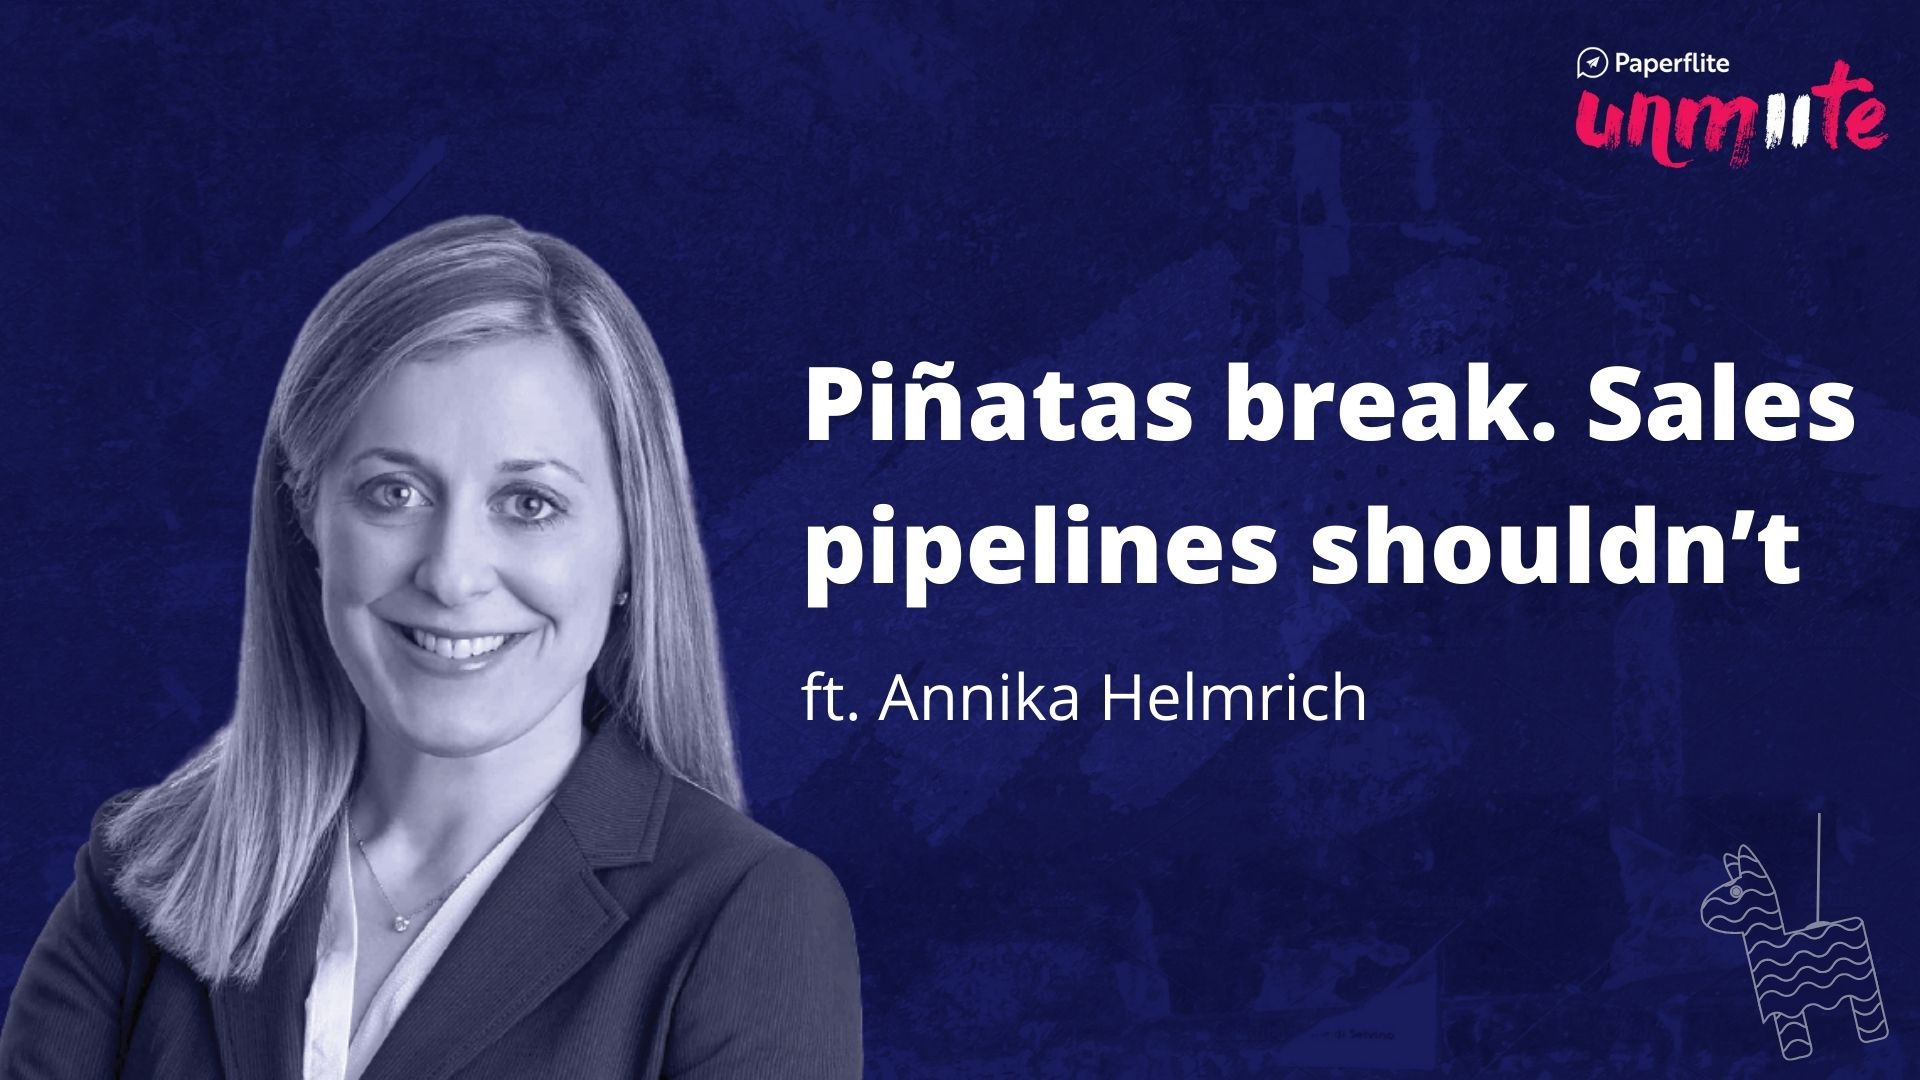 Piñatas break. Sales pipelines shouldn’t
